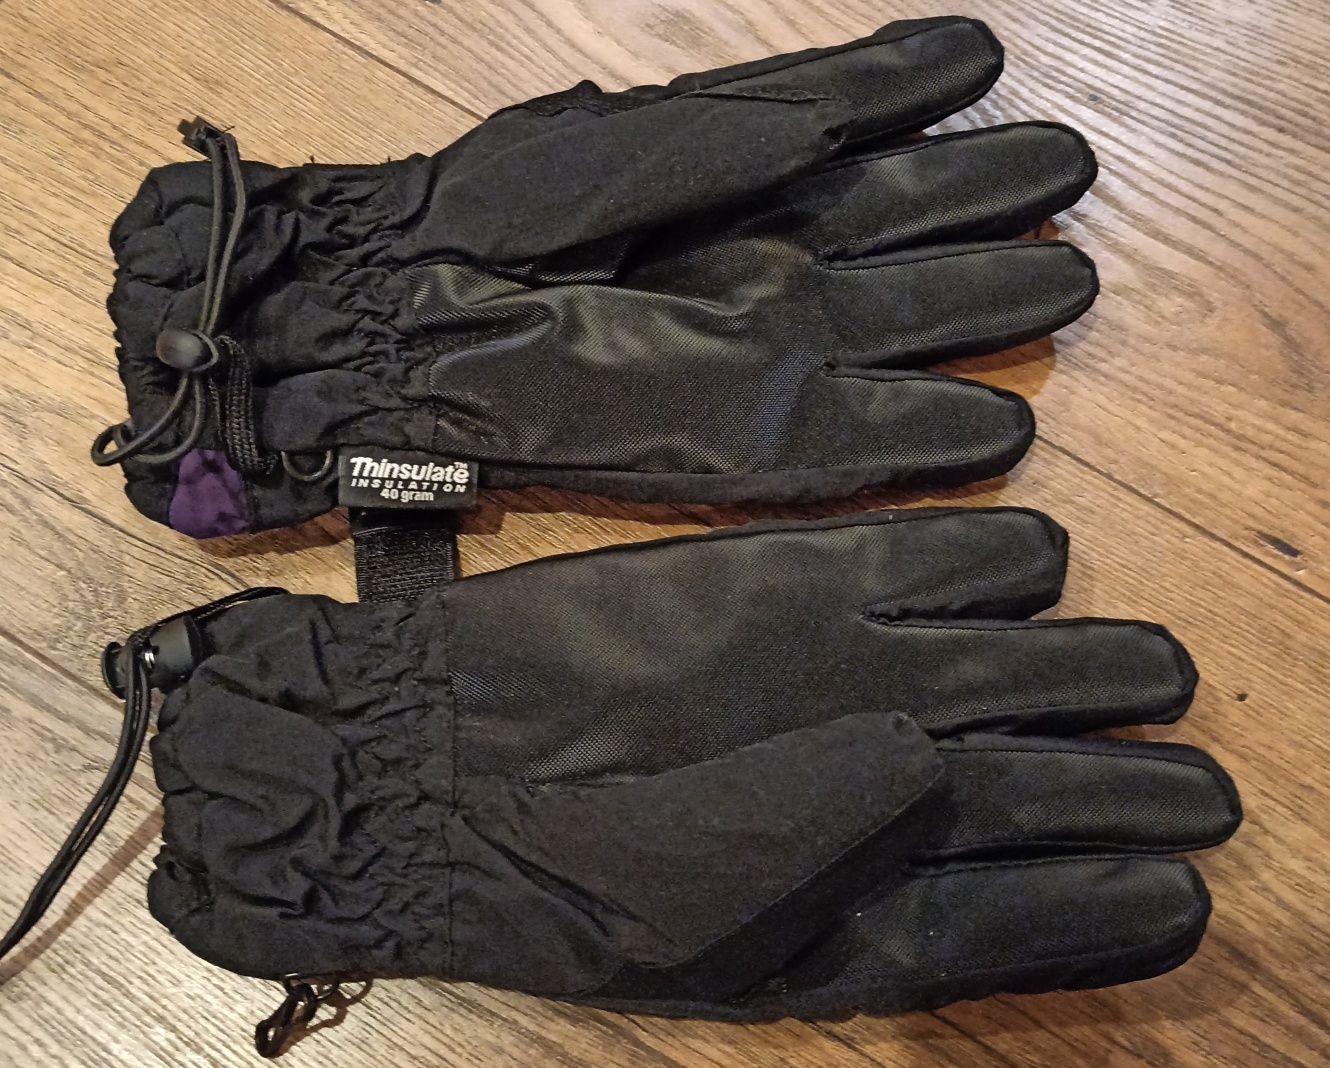 Zimowe damskie rękawiczki Hi-tec thinsulate 40 gram L/XL